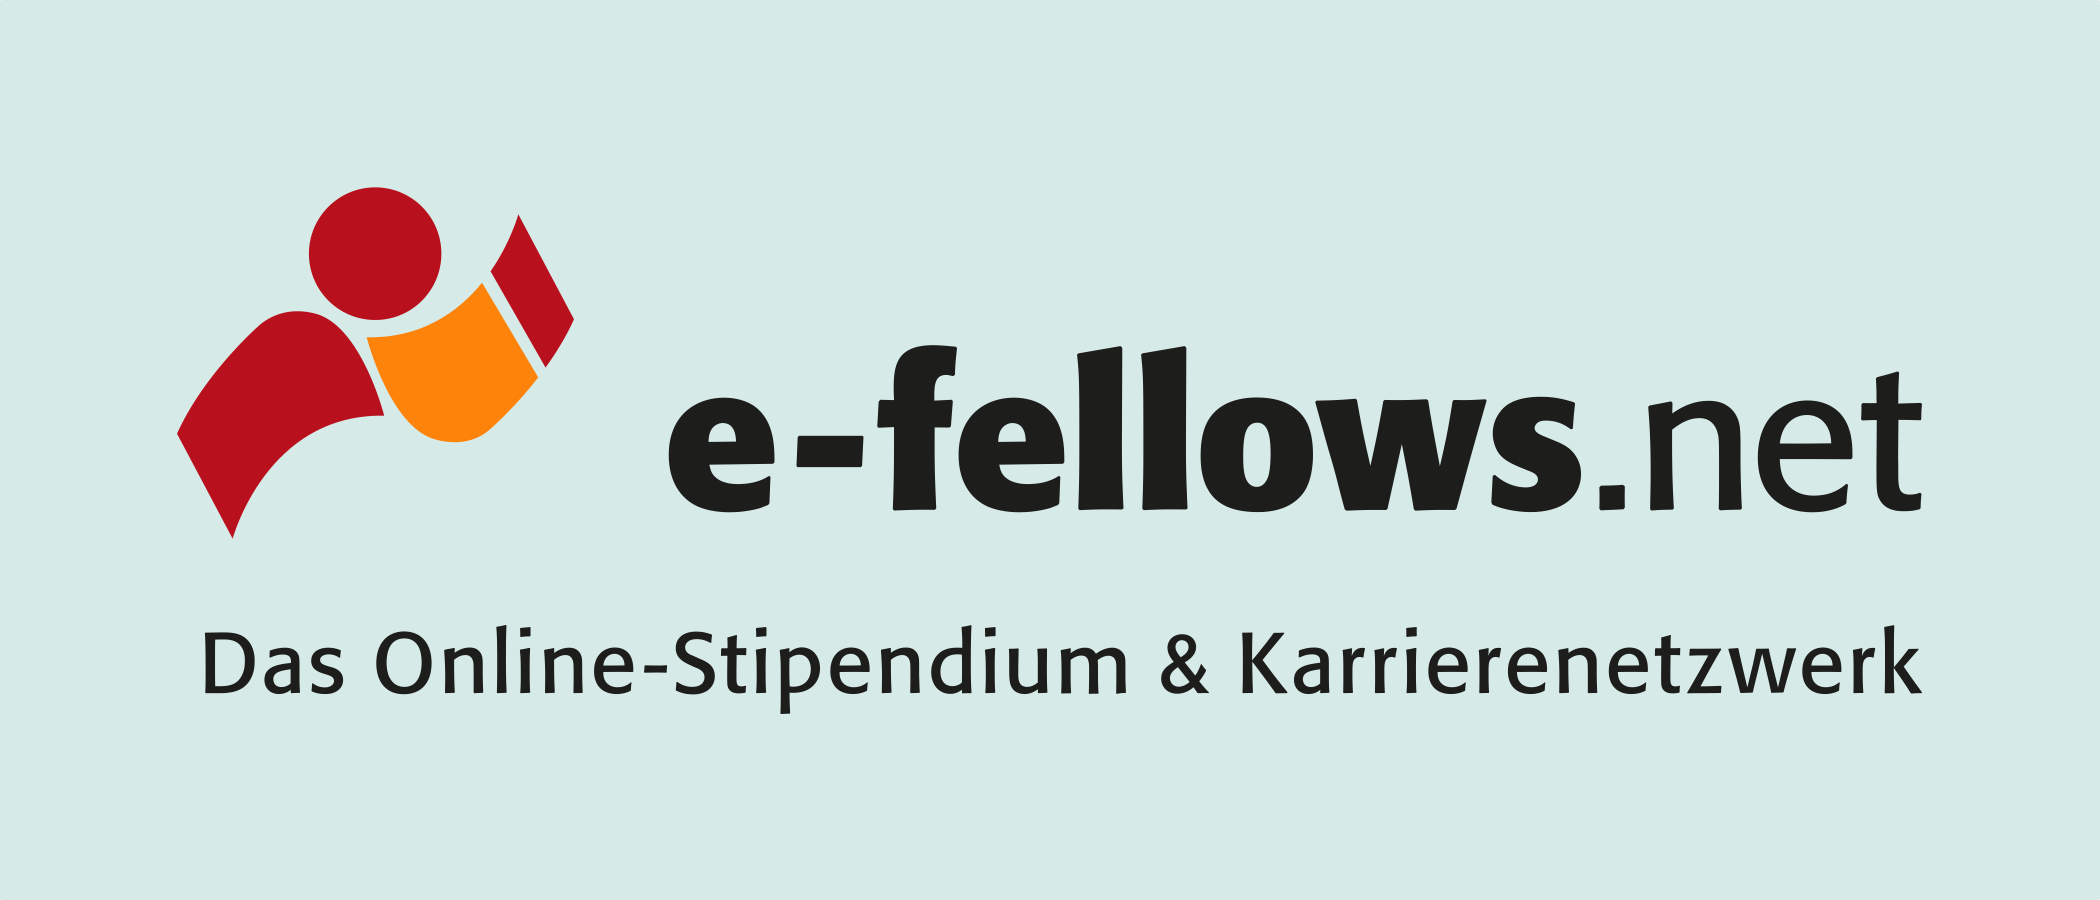 e-fellows.net